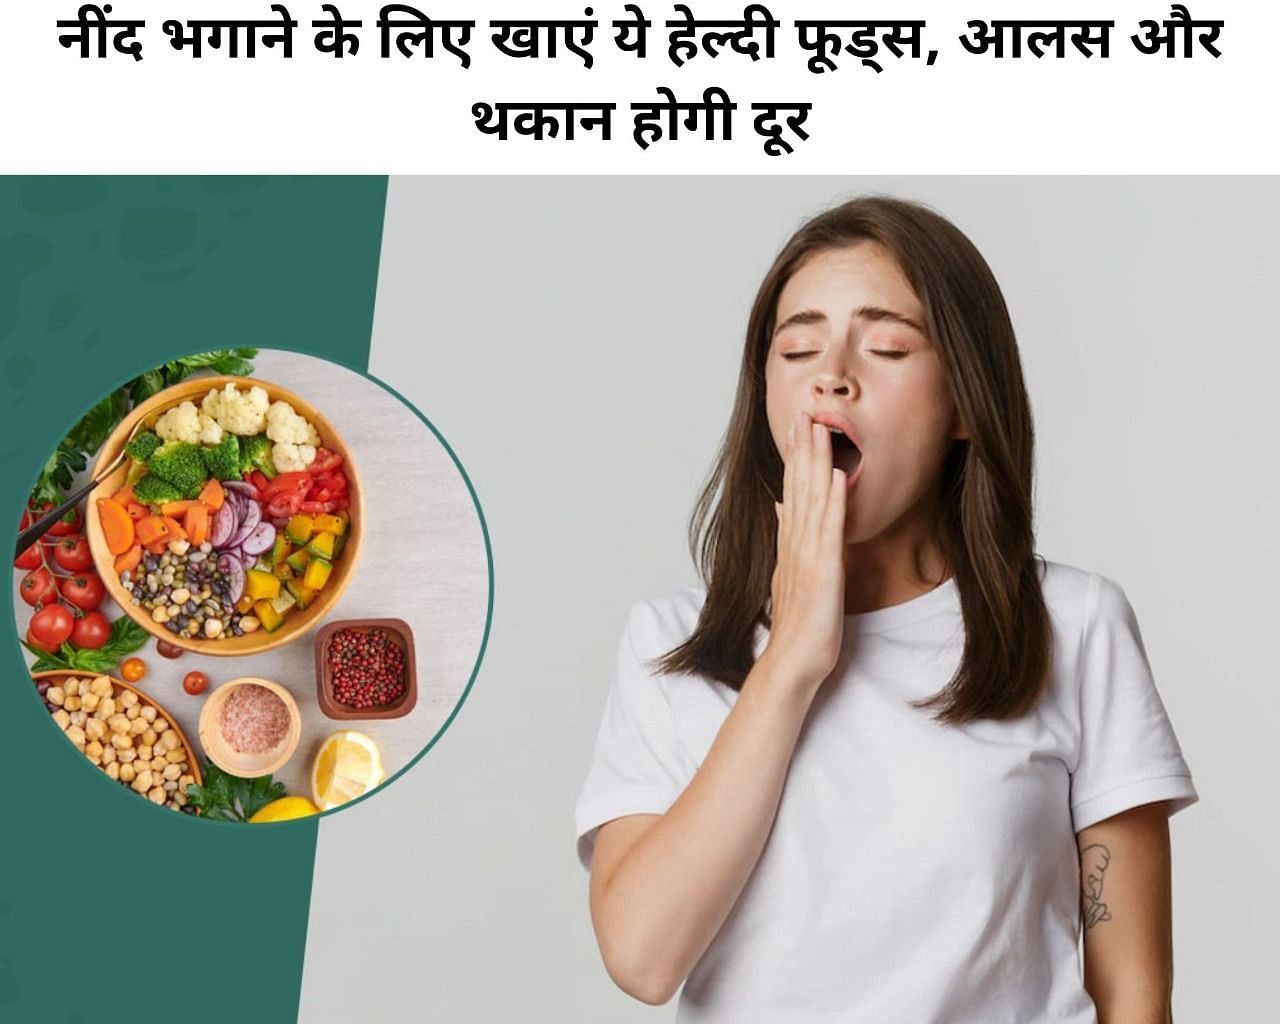 नींद भगाने के लिए खाएं ये हेल्दी फूड्स, आलस और थकान होगी दूर (फोटो - sportskeeda hindi)